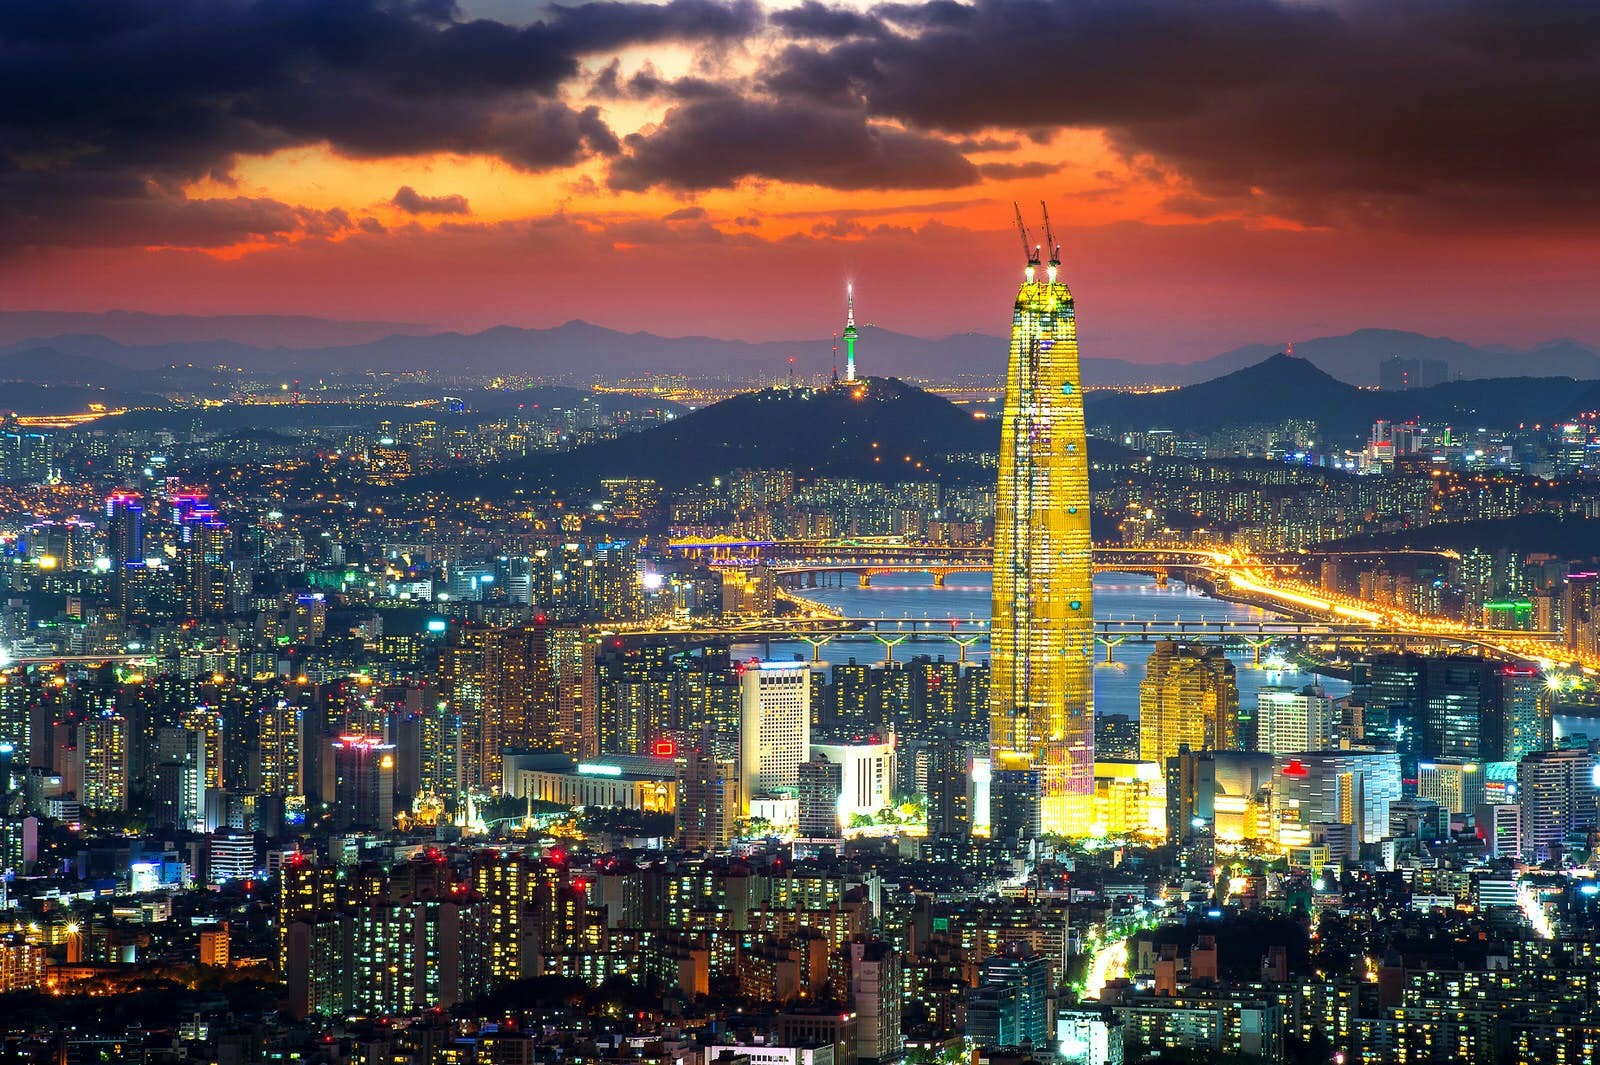 Il dinamico paesaggio urbano di Seoul:un tour architettonico attraverso la capitale sudcoreana 